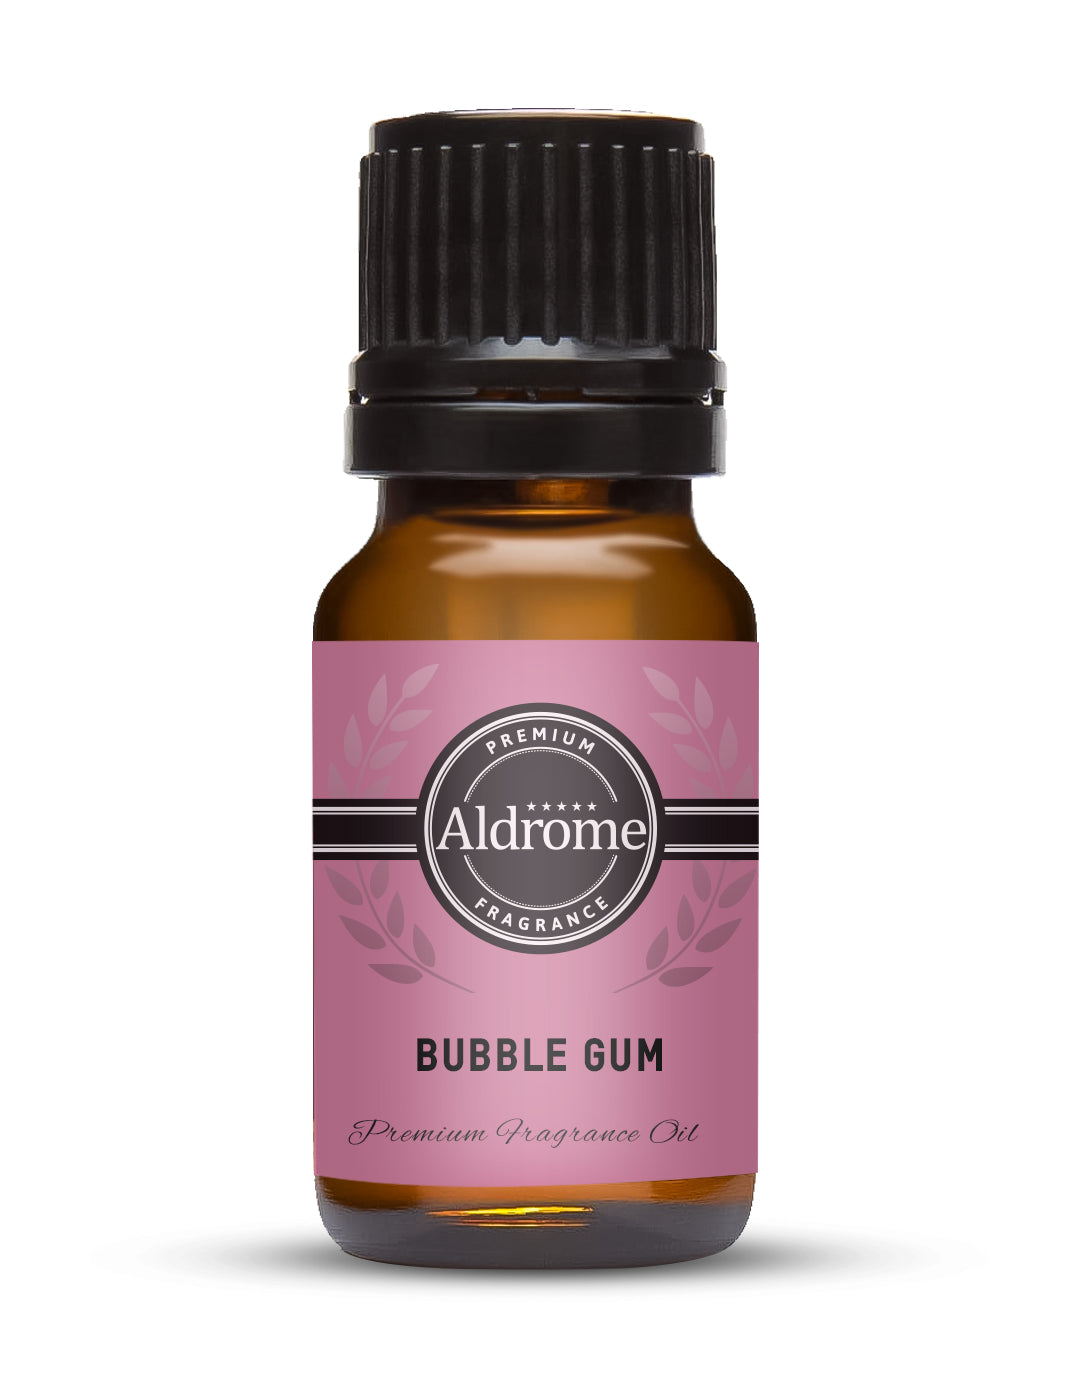 Bubble Gum Fragrance Oil - 10ml | Buy Bubble Gum Fragrance Oils Online at Best Prices